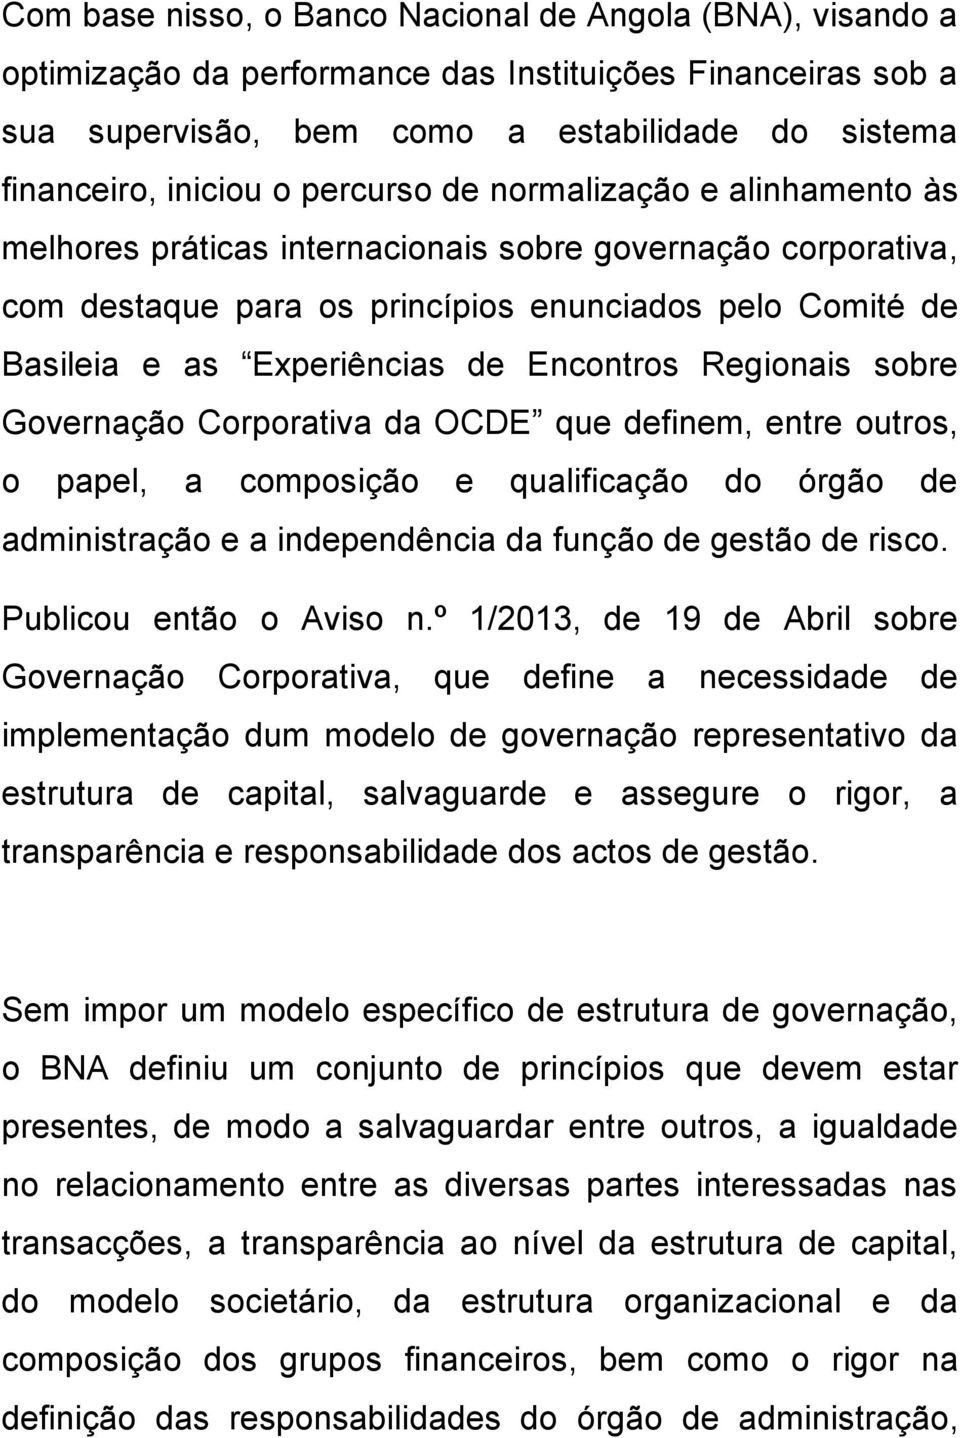 Encontros Regionais sobre Governação Corporativa da OCDE que definem, entre outros, o papel, a composição e qualificação do órgão de administração e a independência da função de gestão de risco.